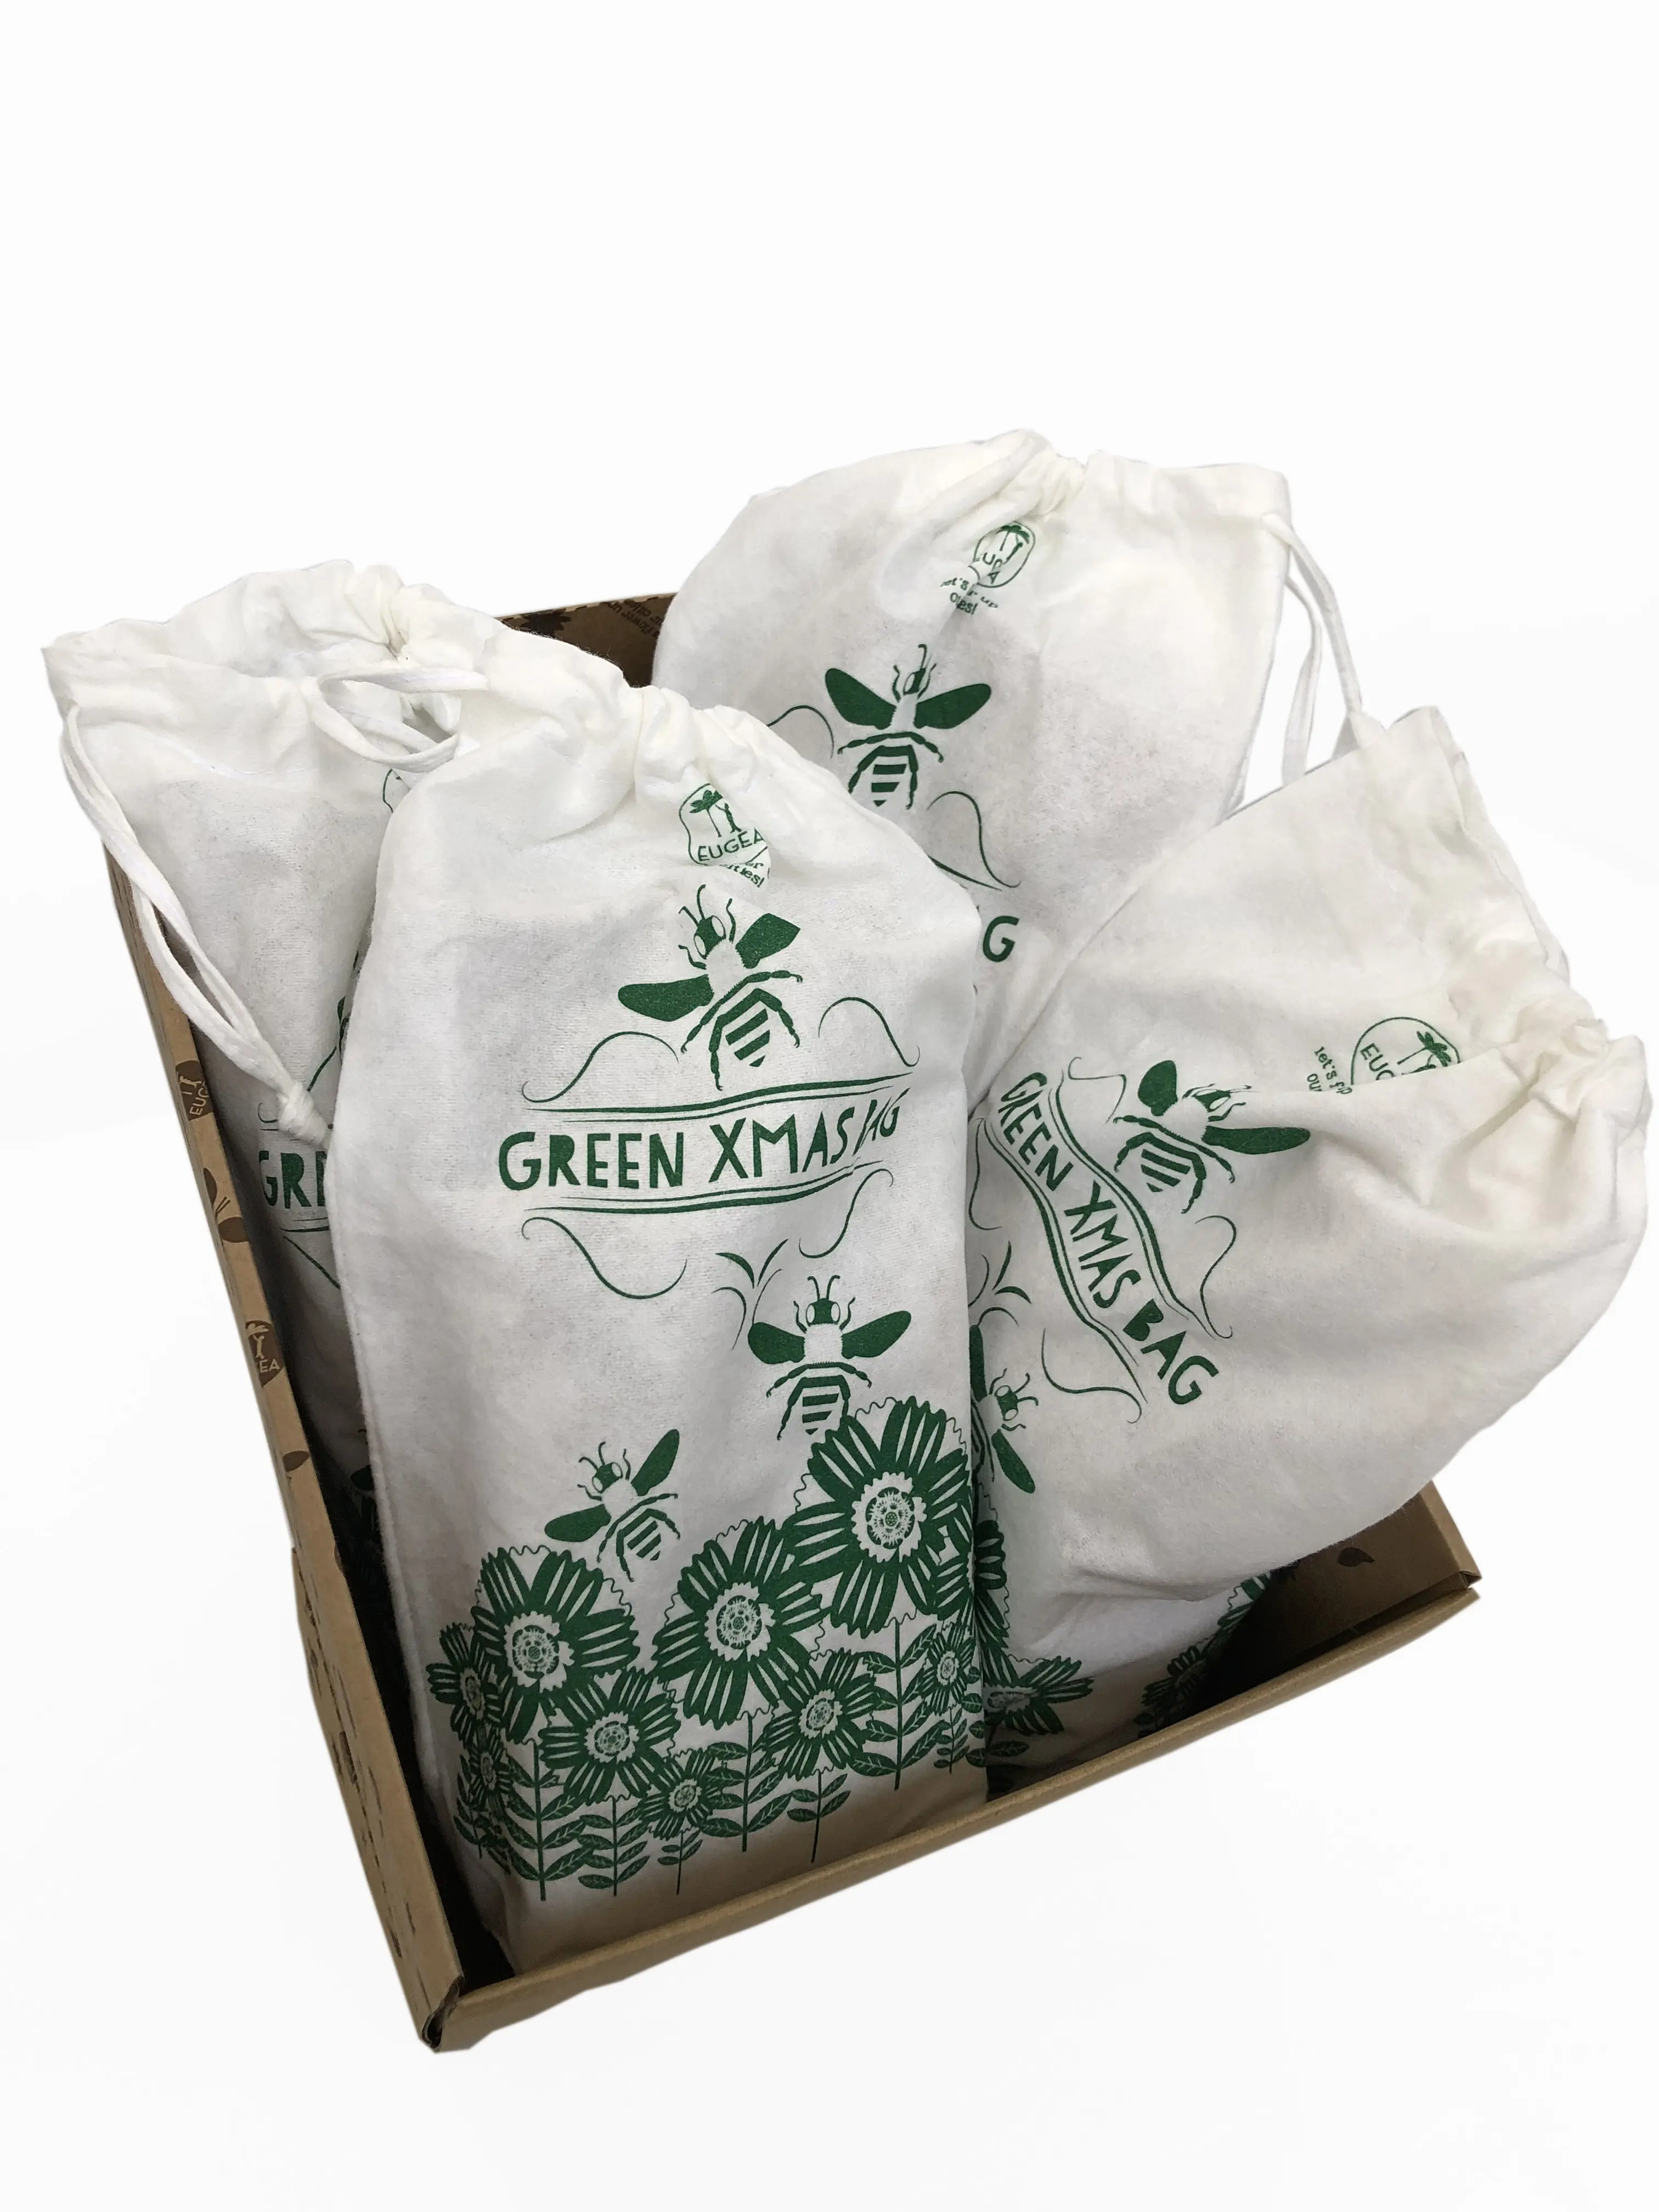 Yeşil noel çantası-kullanıma hazır Kit, s-eeds paketini içerir. S-eed çiçekleri, arıları besler!